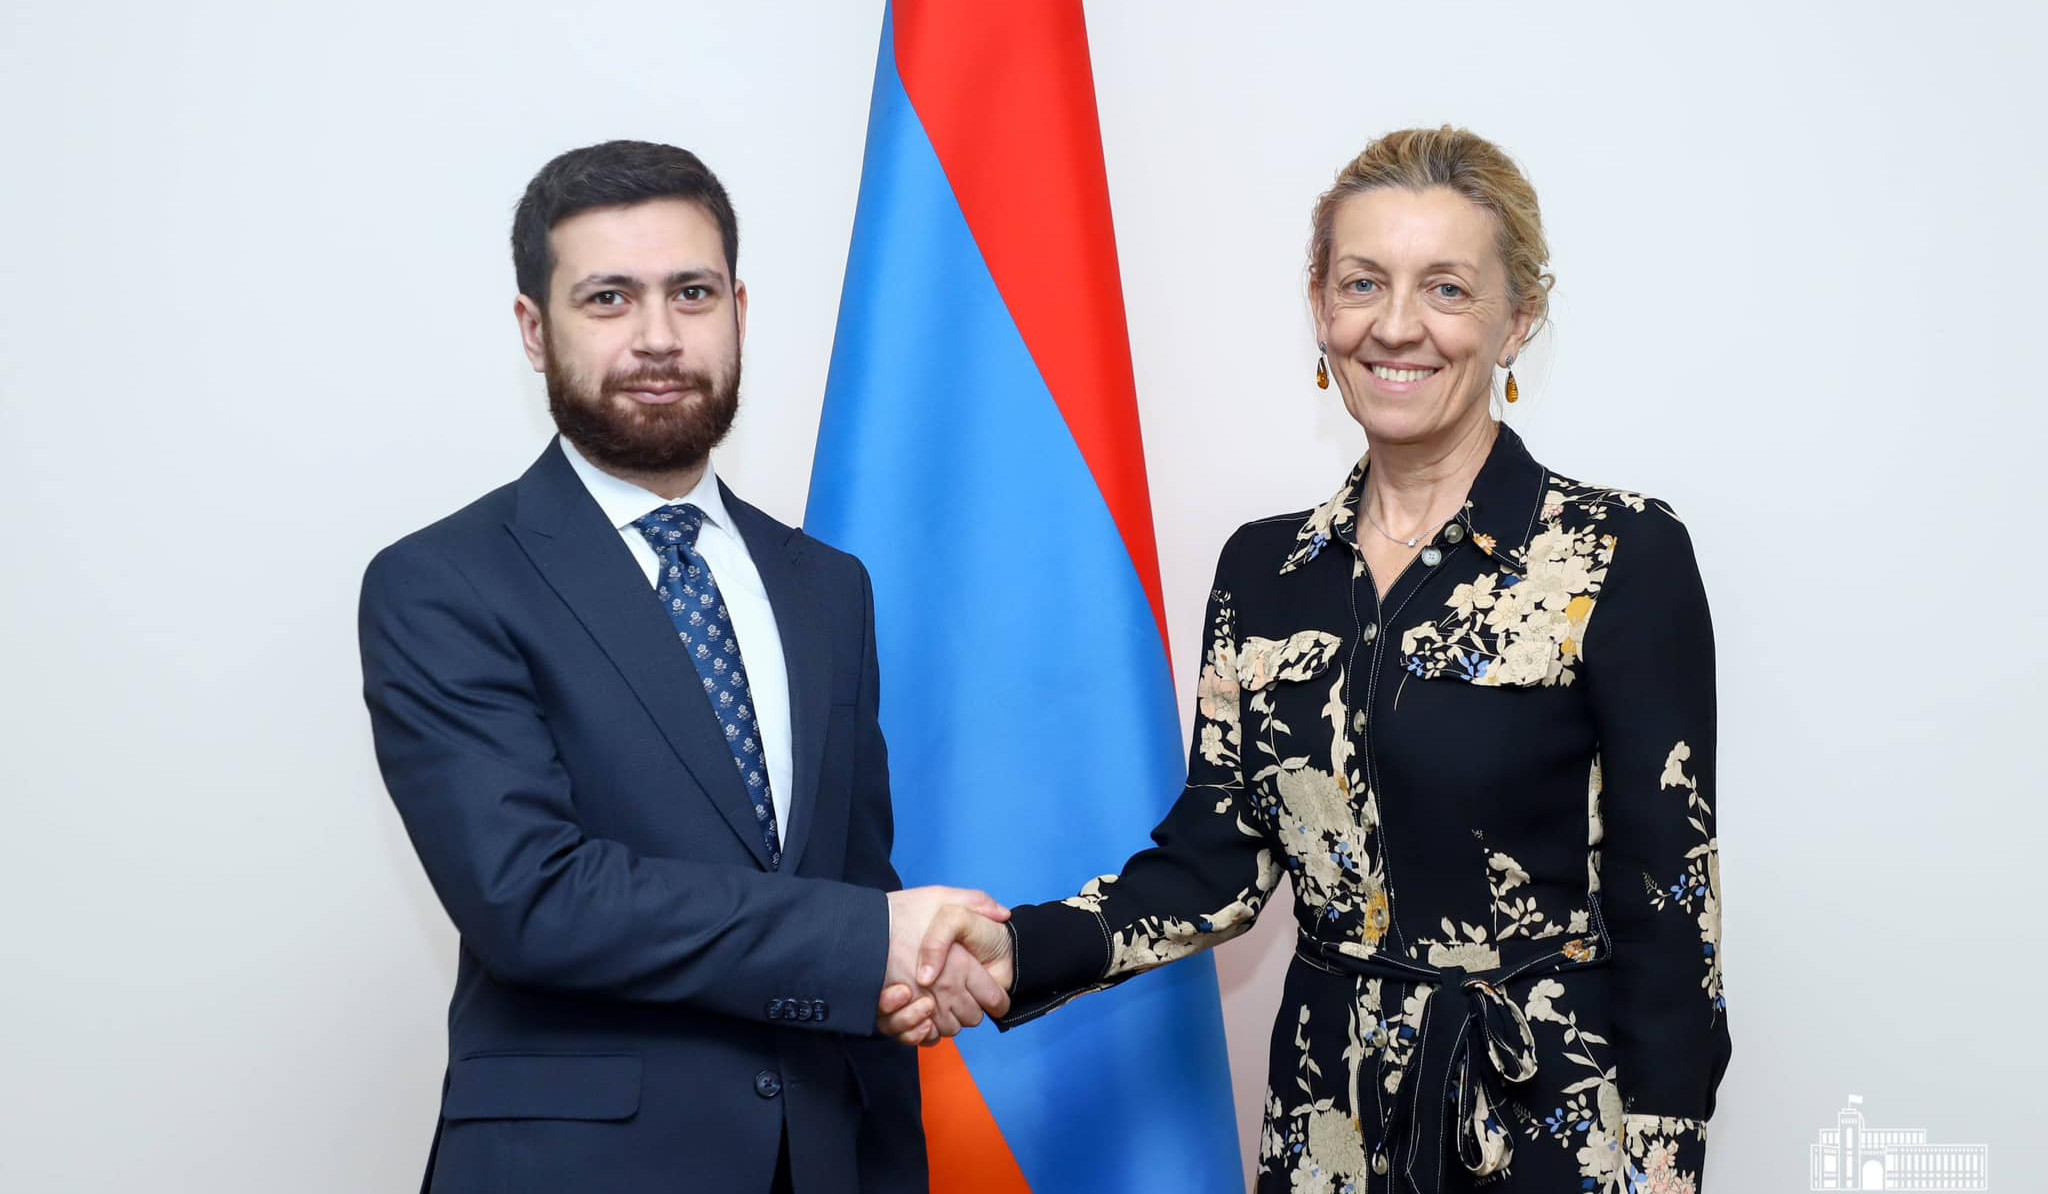 Քննարկվել են Հայաստանում գործող ՄԱԿ գործակալությունների կողմից իրականացվող ծրագրերը